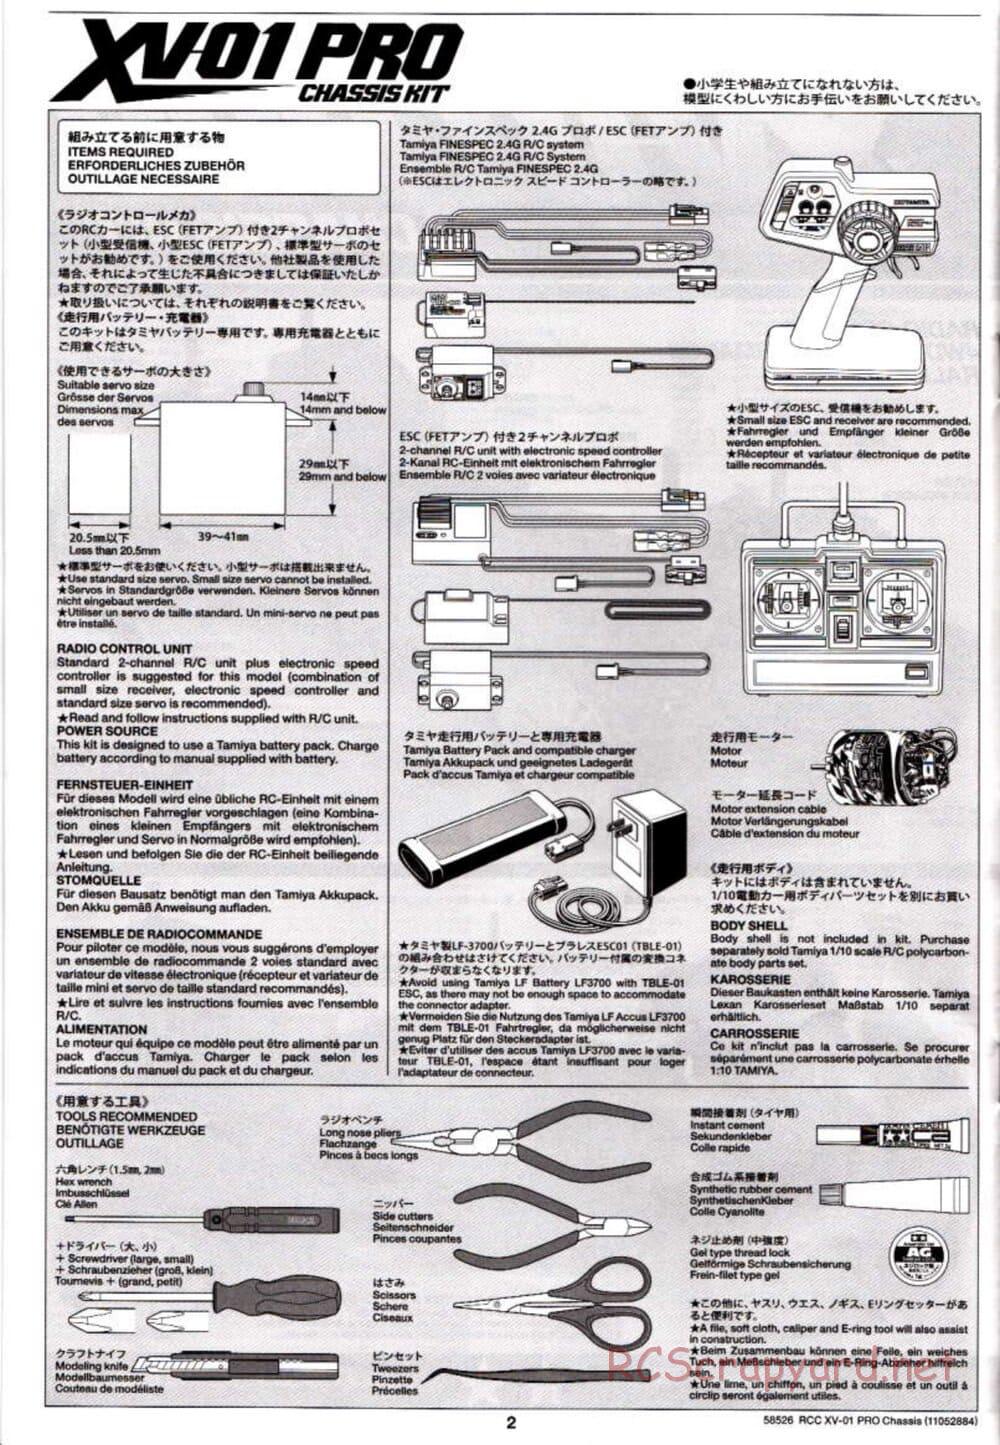 Tamiya - XV-01 PRO Chassis - Manual - Page 2